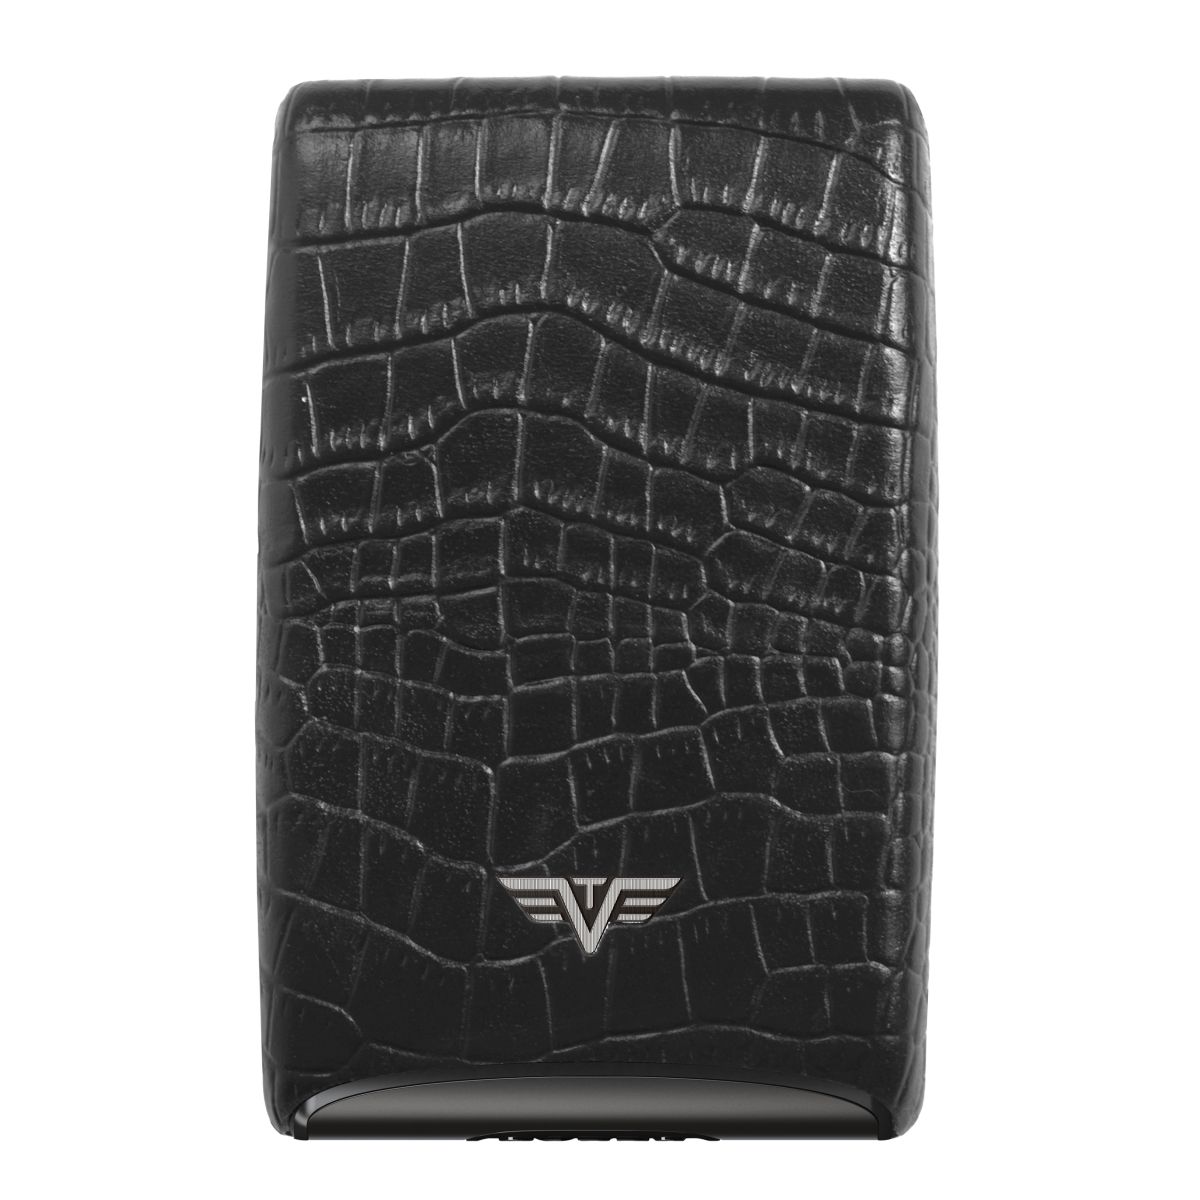 TRU VIRTU Aluminum Card Case Fan Leather Line - Corco Black